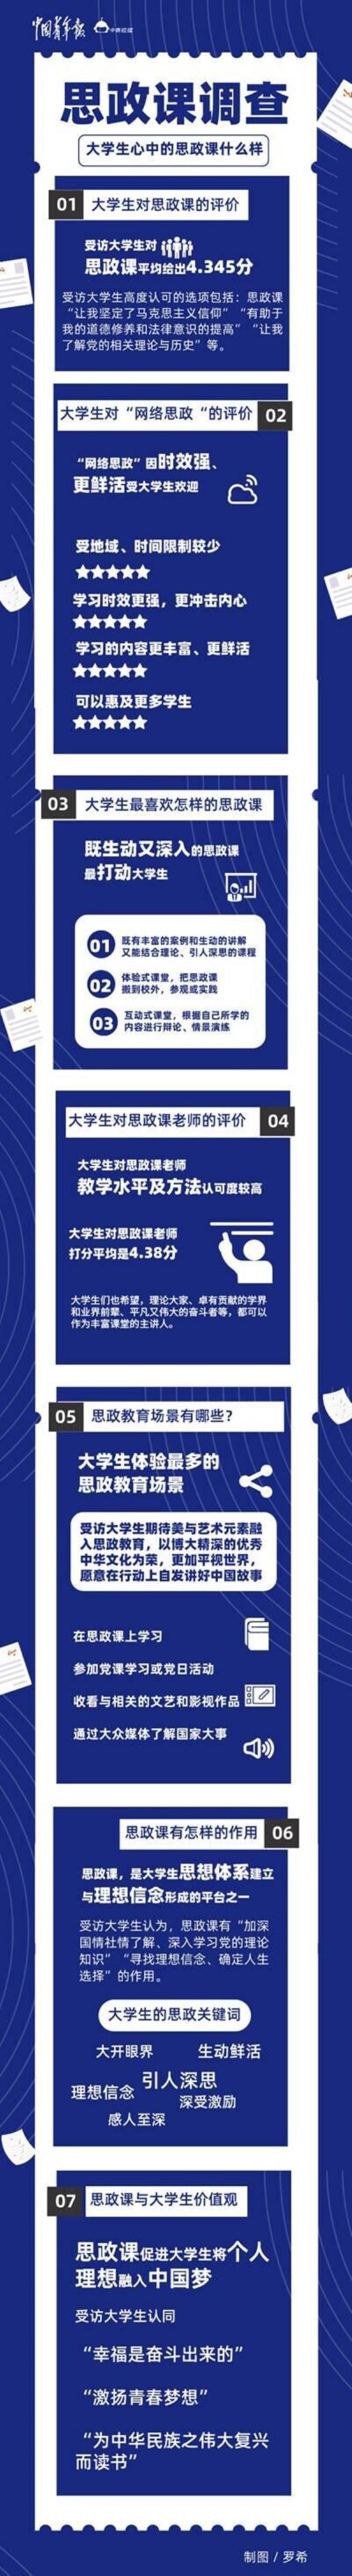 南京大学网络教育概论选择题目_中国在线教育的现状特点为多选题